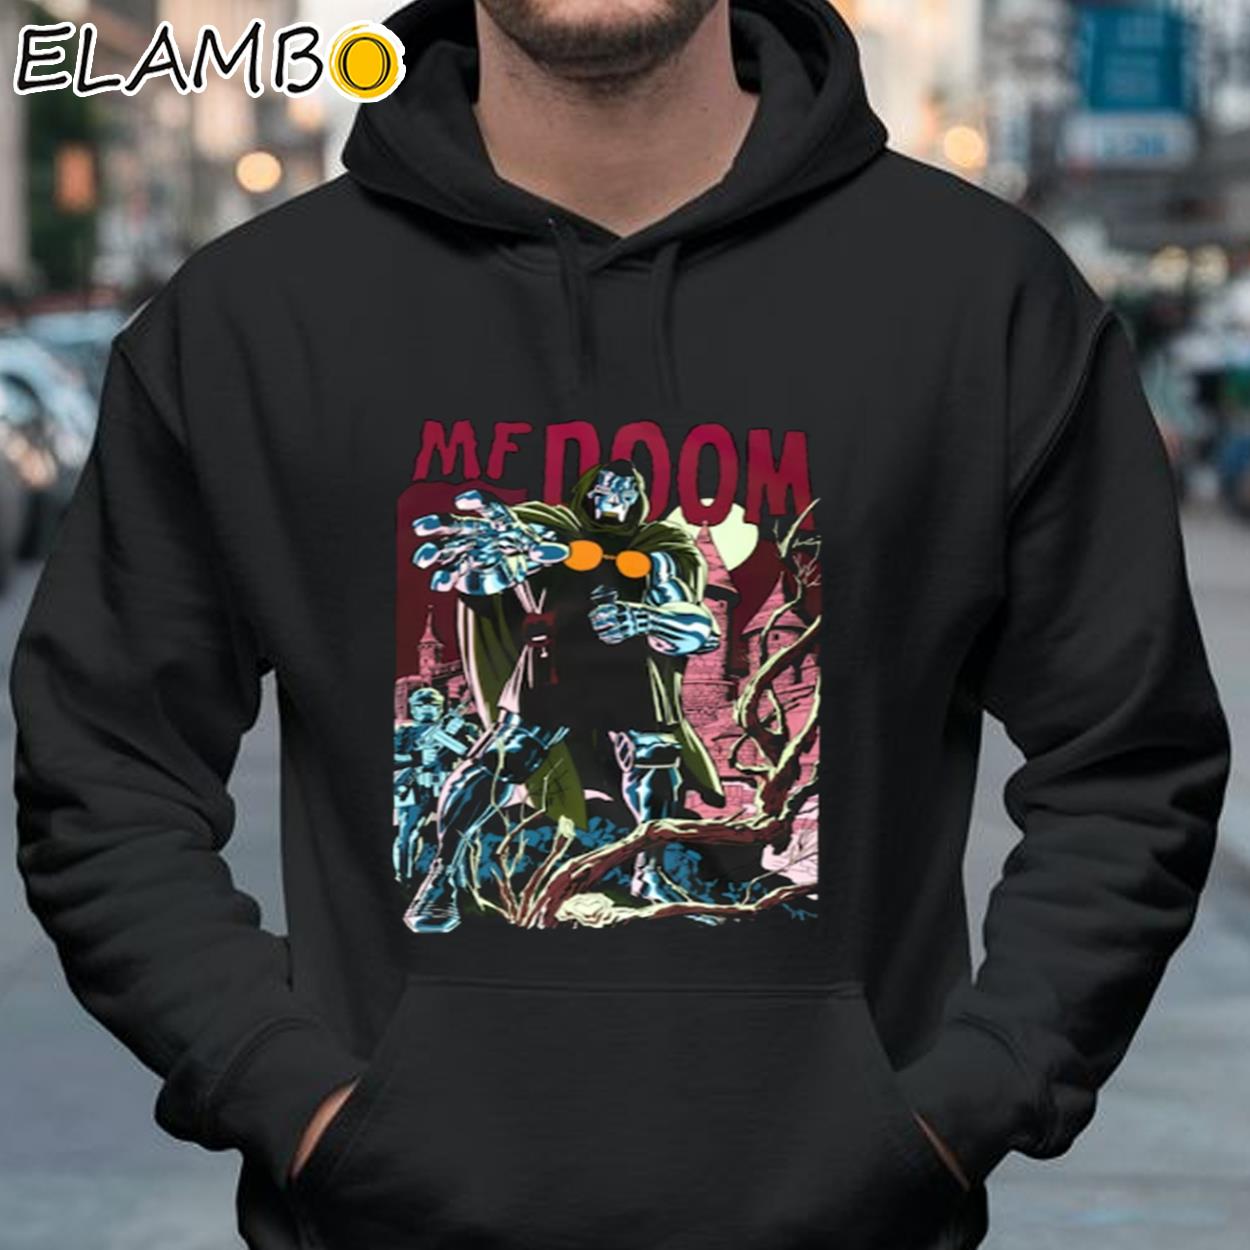 MF Doom Shirt Hip Hop Rapper - elambotee